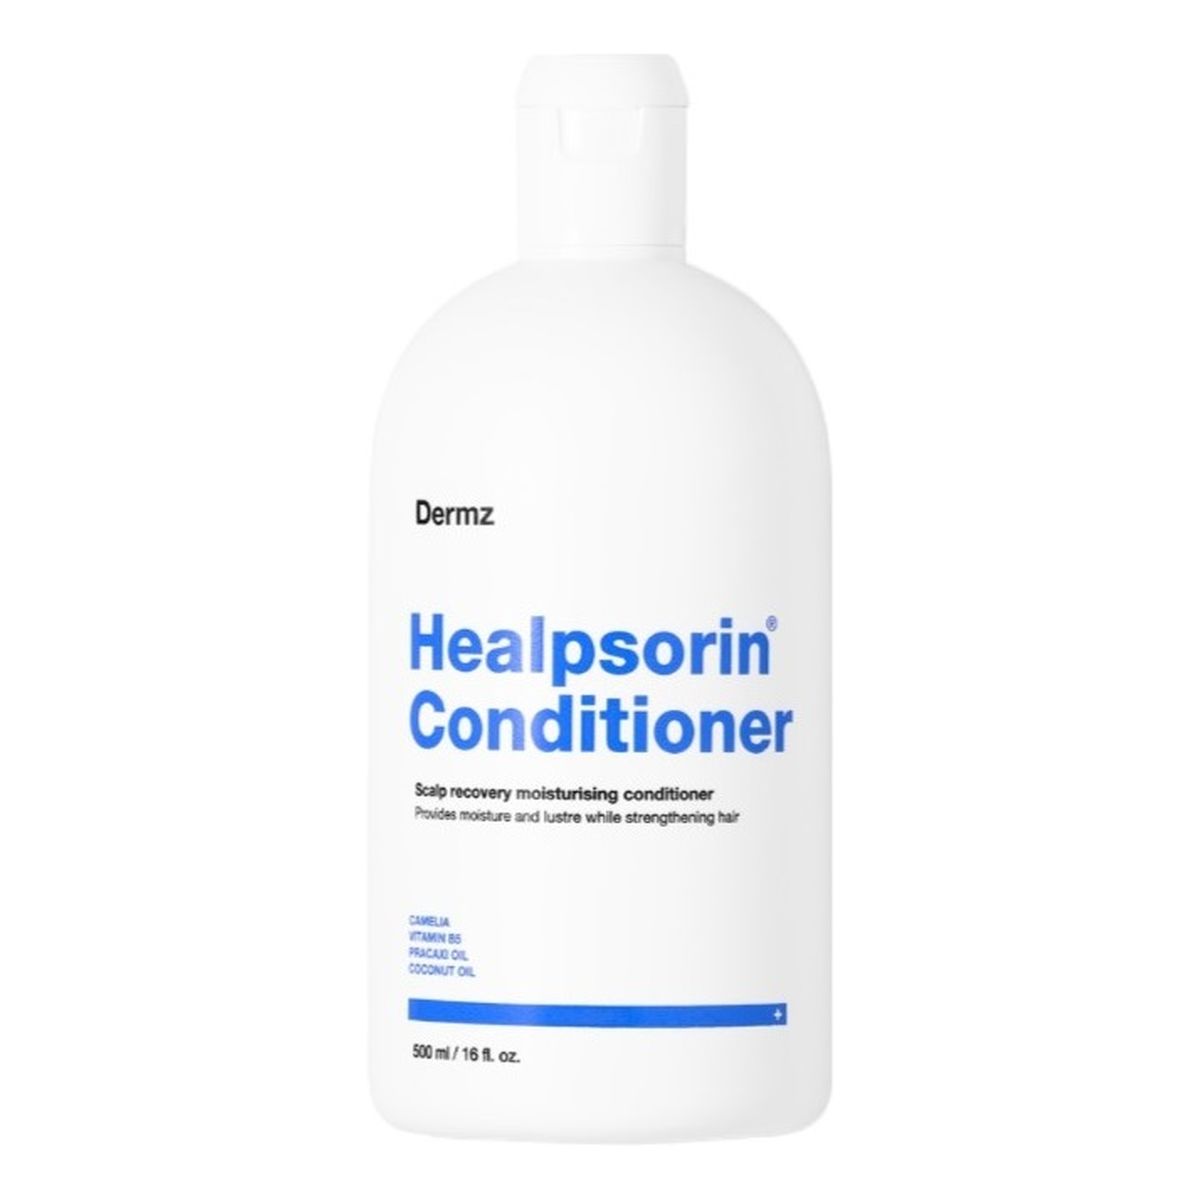 Dermz Healpsorin odżywka regenerująca włosy i skórę głowy 500ml